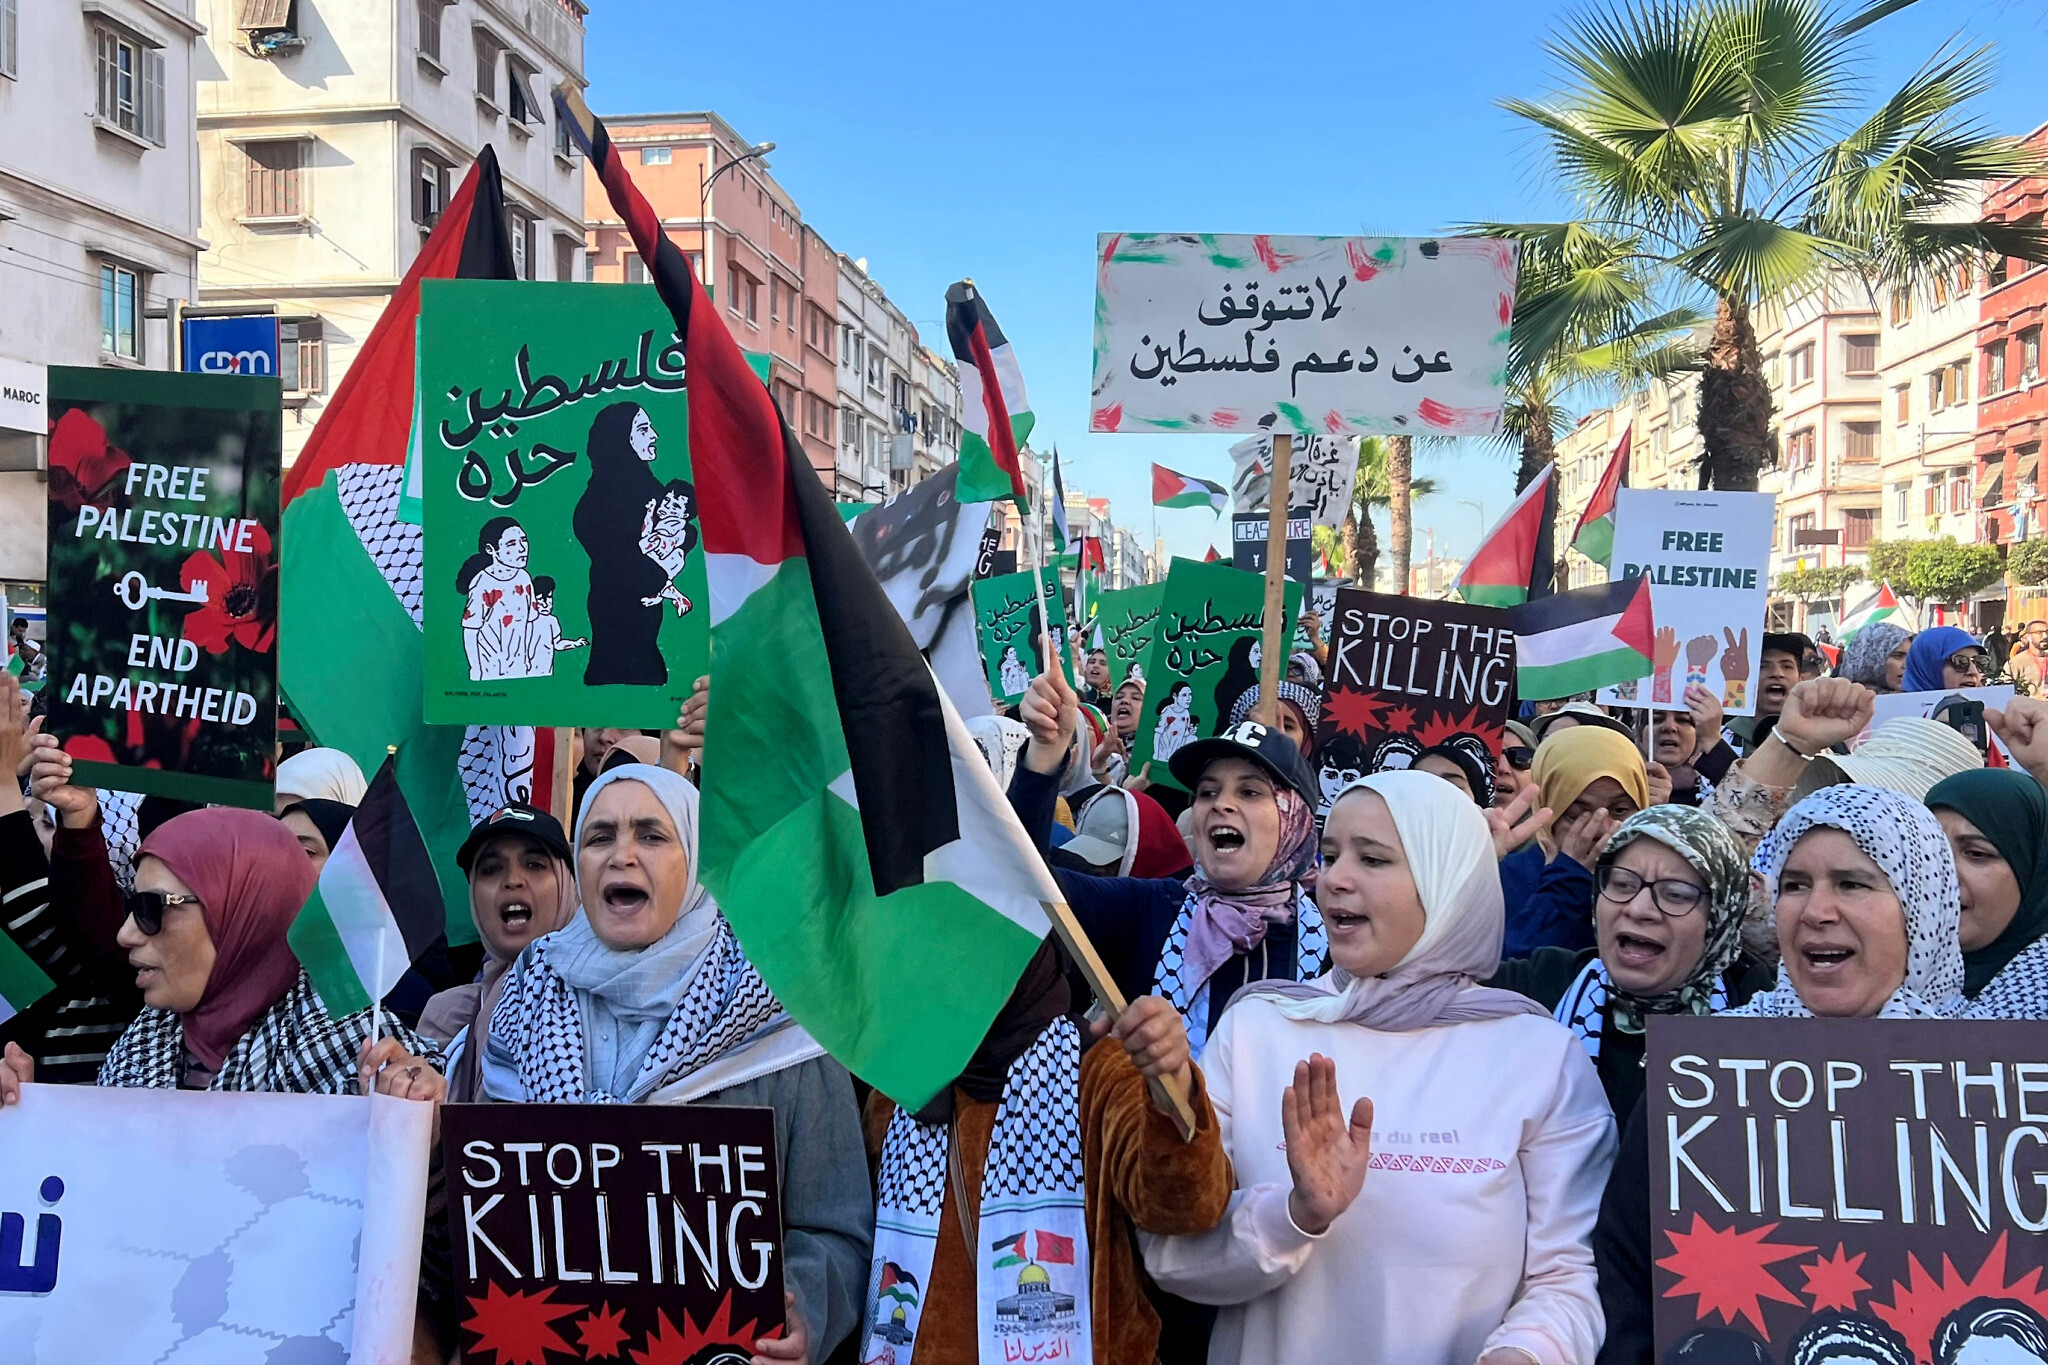 Maroc : 5 ans de prison pour critique contre les liens avec Israël